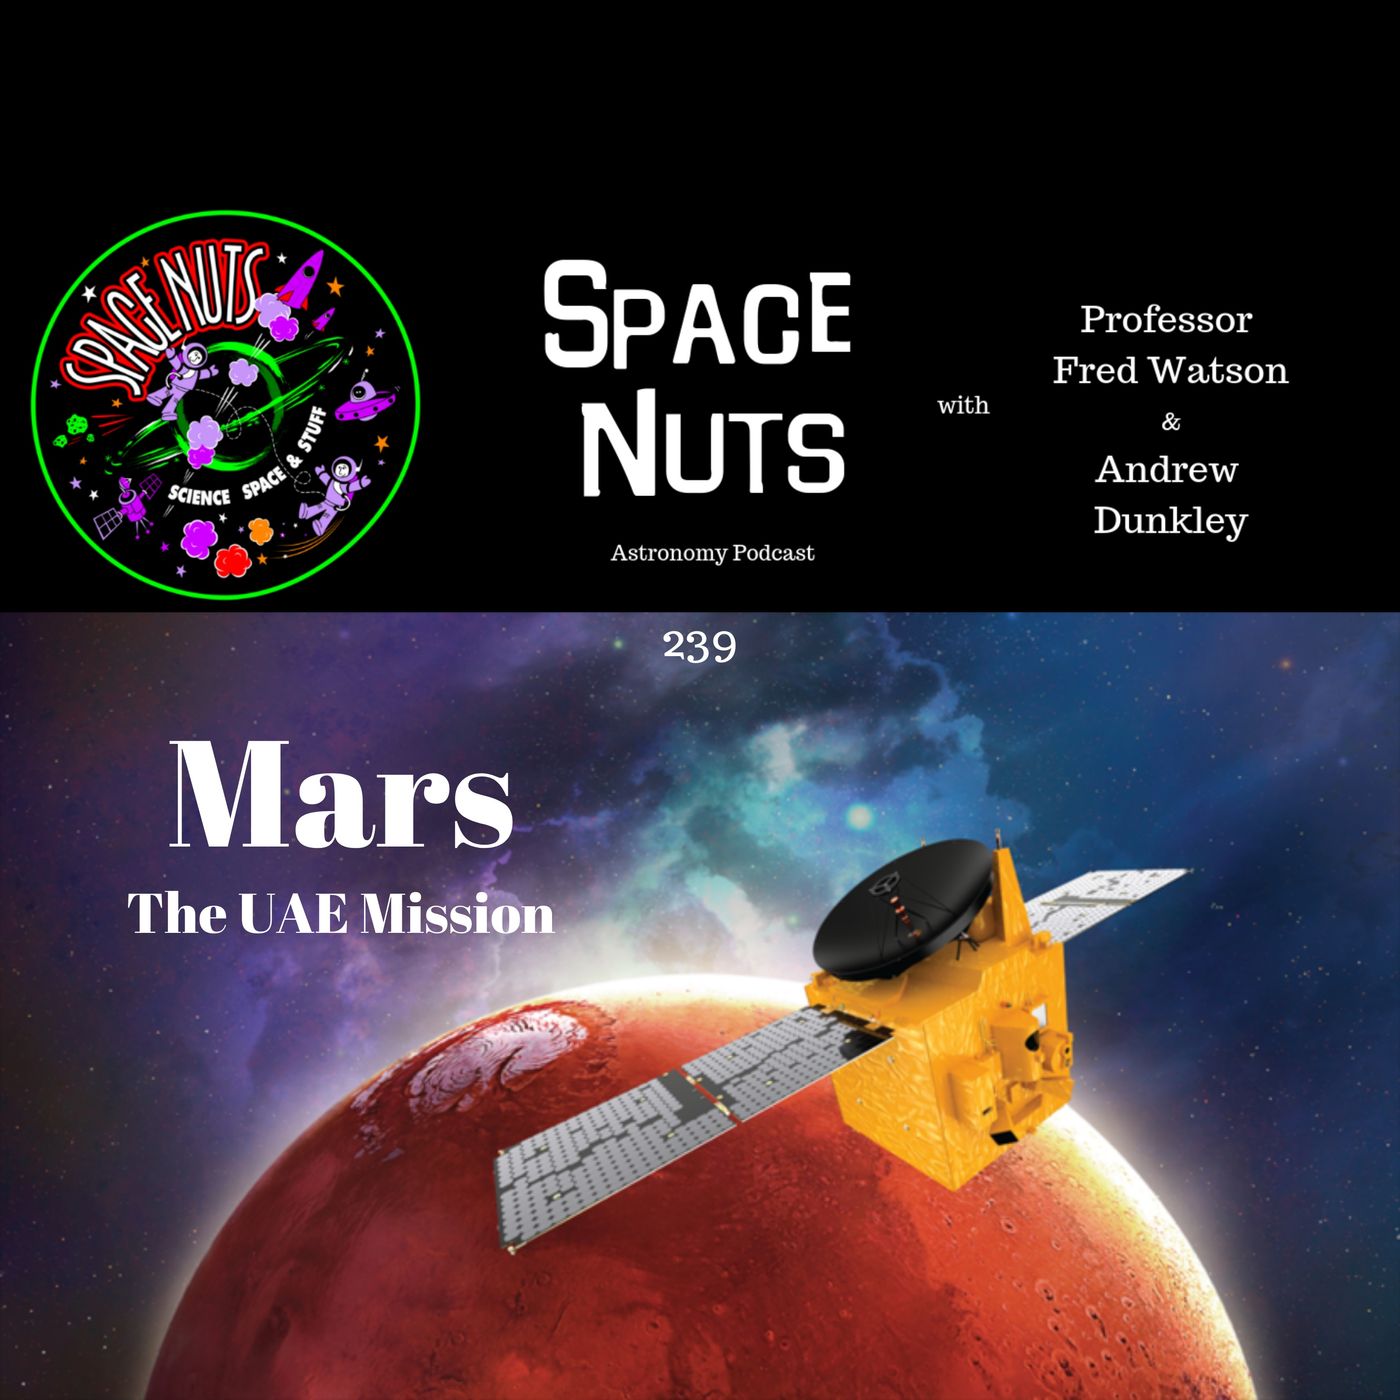 Mars - The UAE Mission